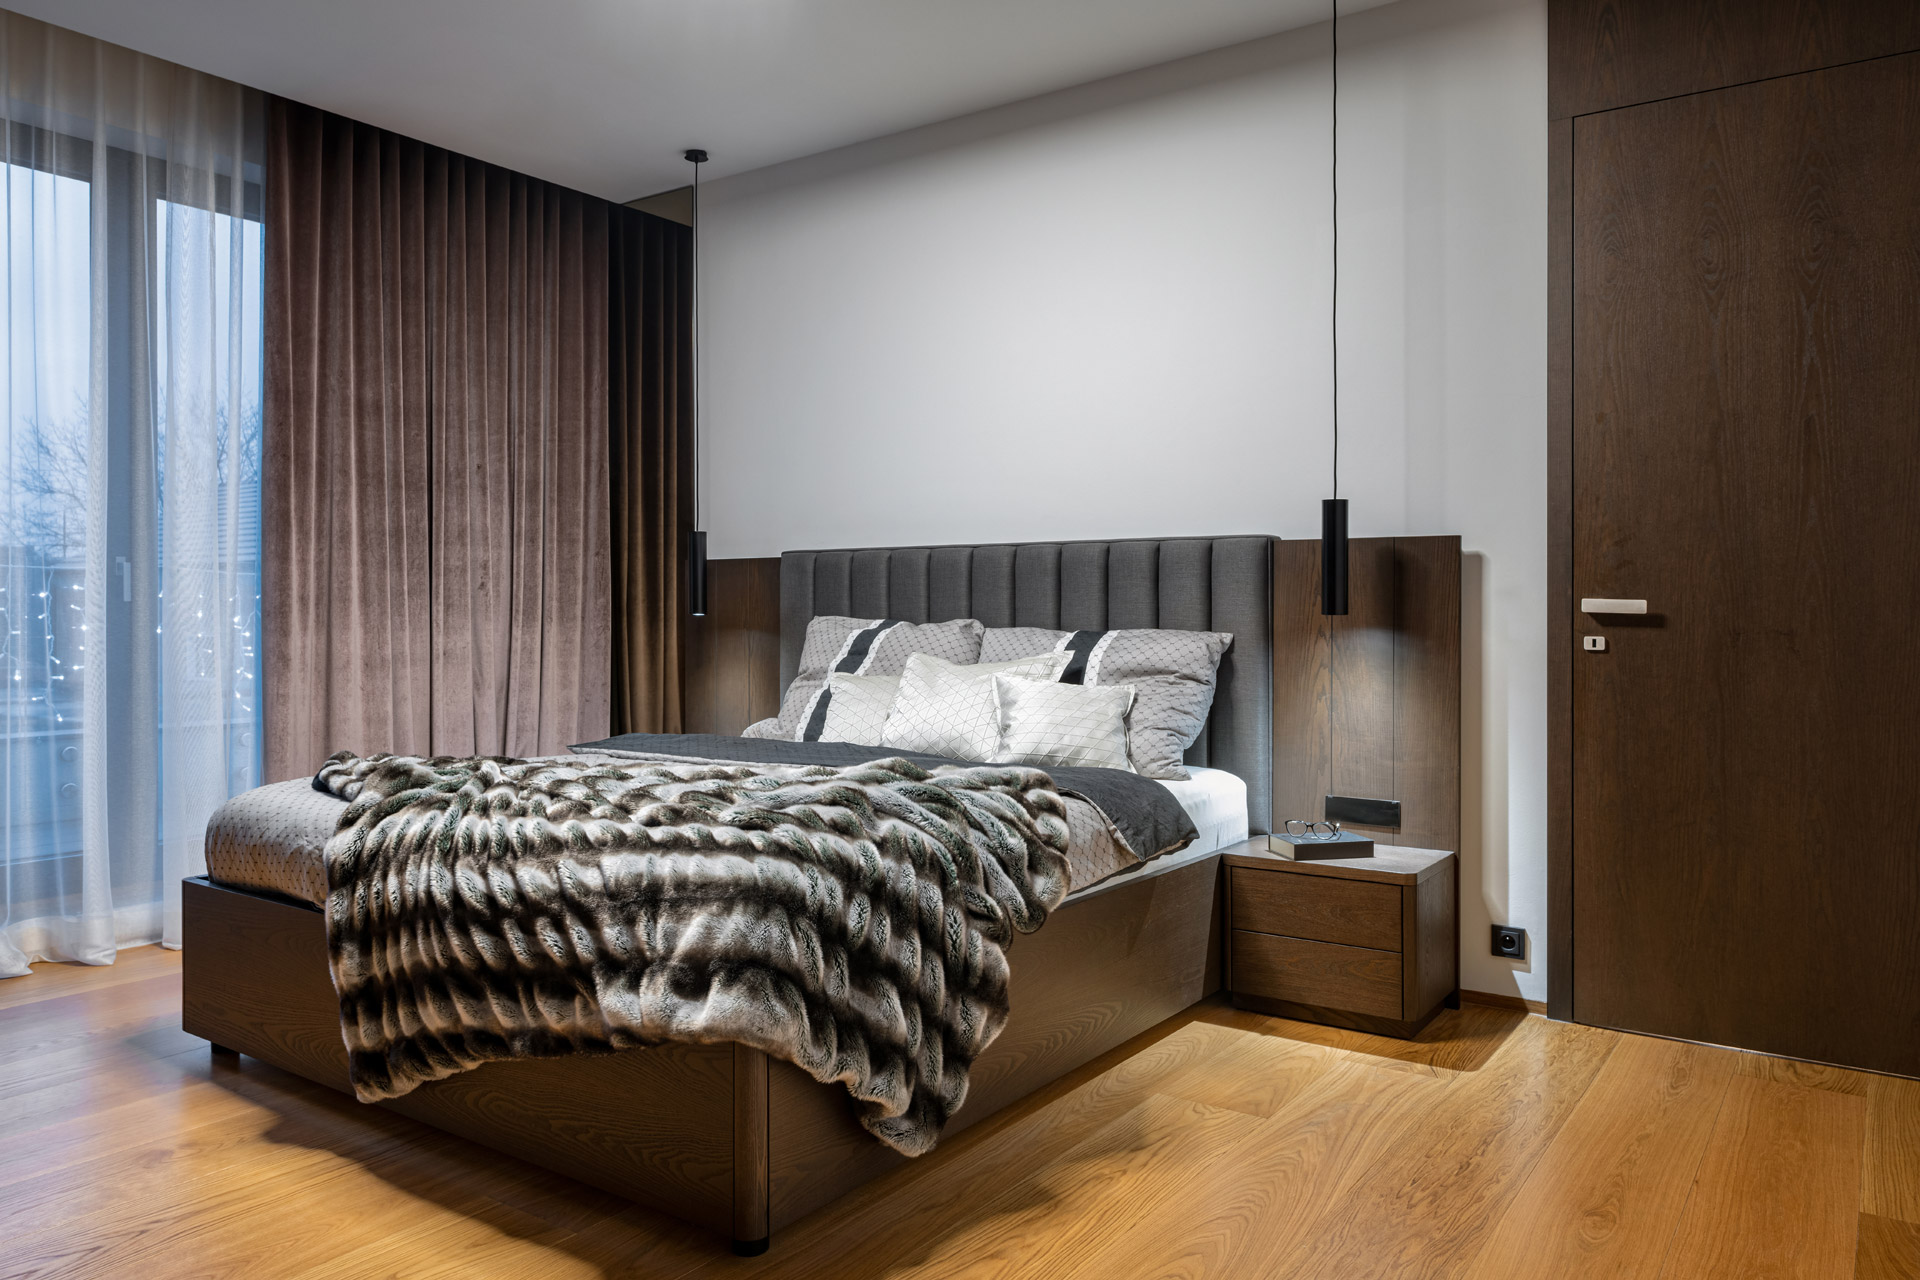 Hanák Furniture Realization Bedroom